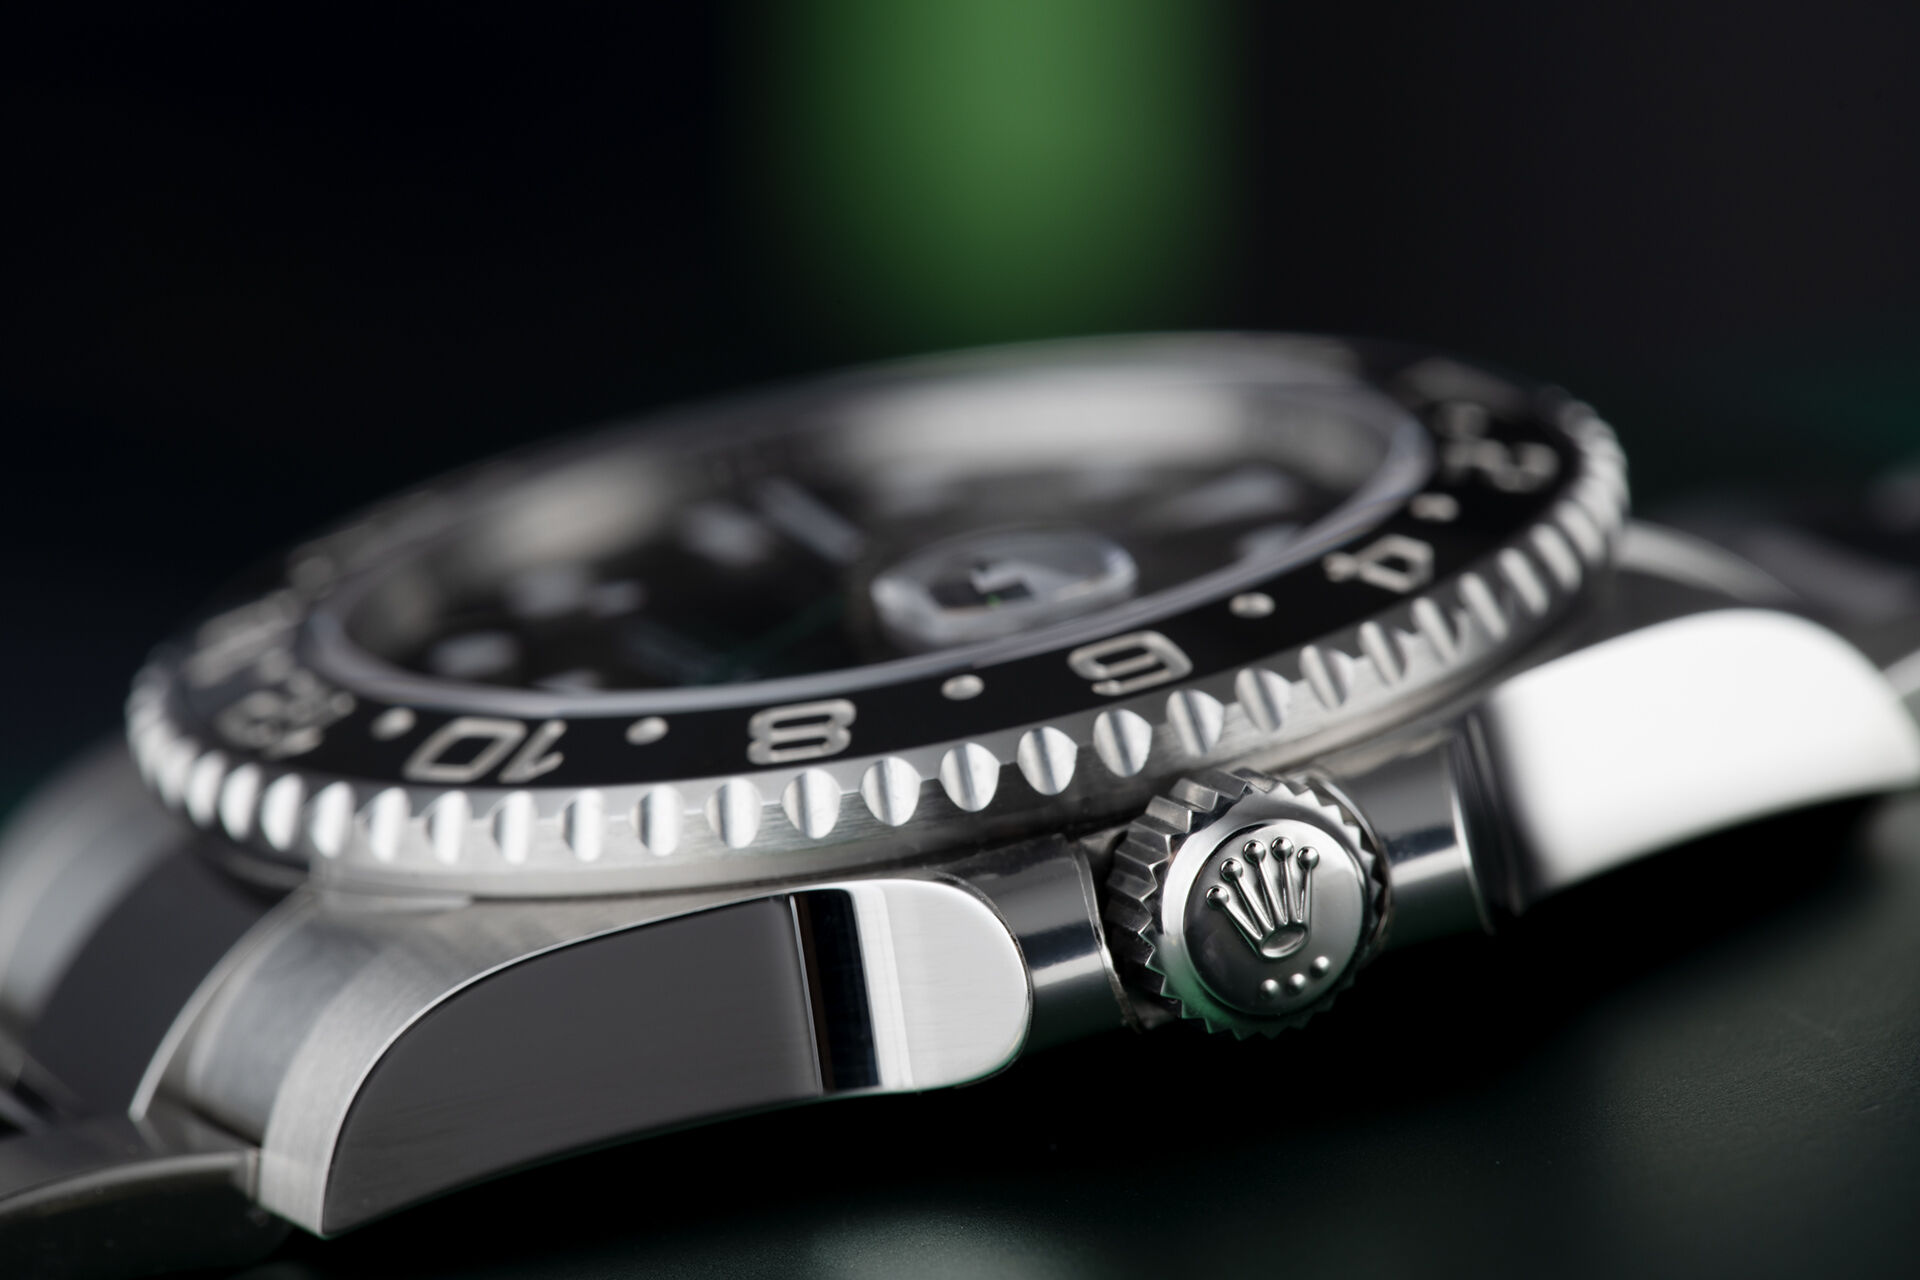 ref 116710LN | Rolex Warranty to 2024 | Rolex GMT-Master II